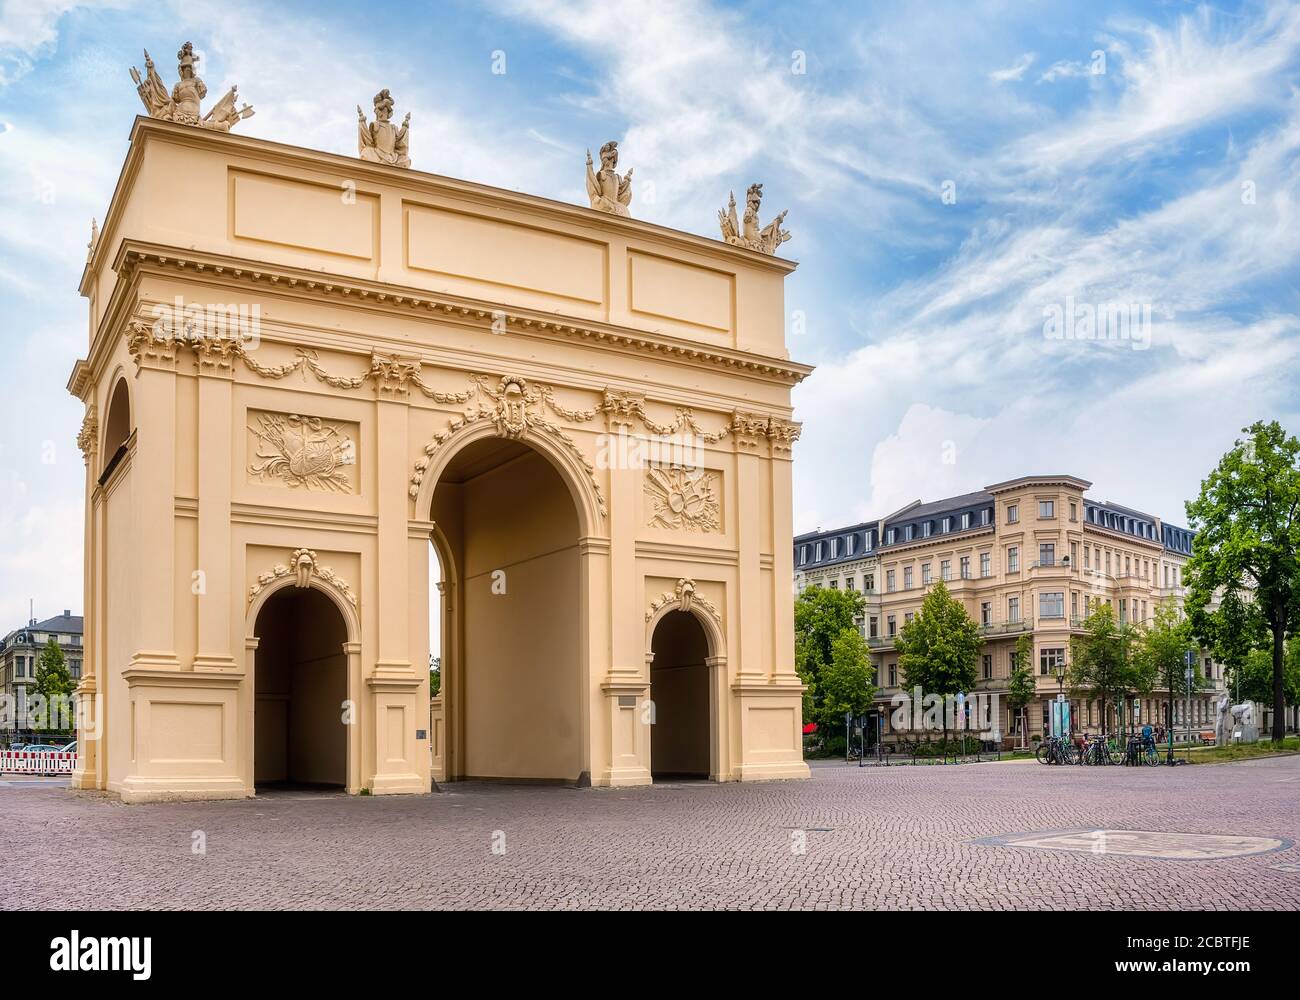 La porta di Brandeburgo (in tedesco: Brandenburger Tor) sulla Luisenplatz a Potsdam Foto Stock